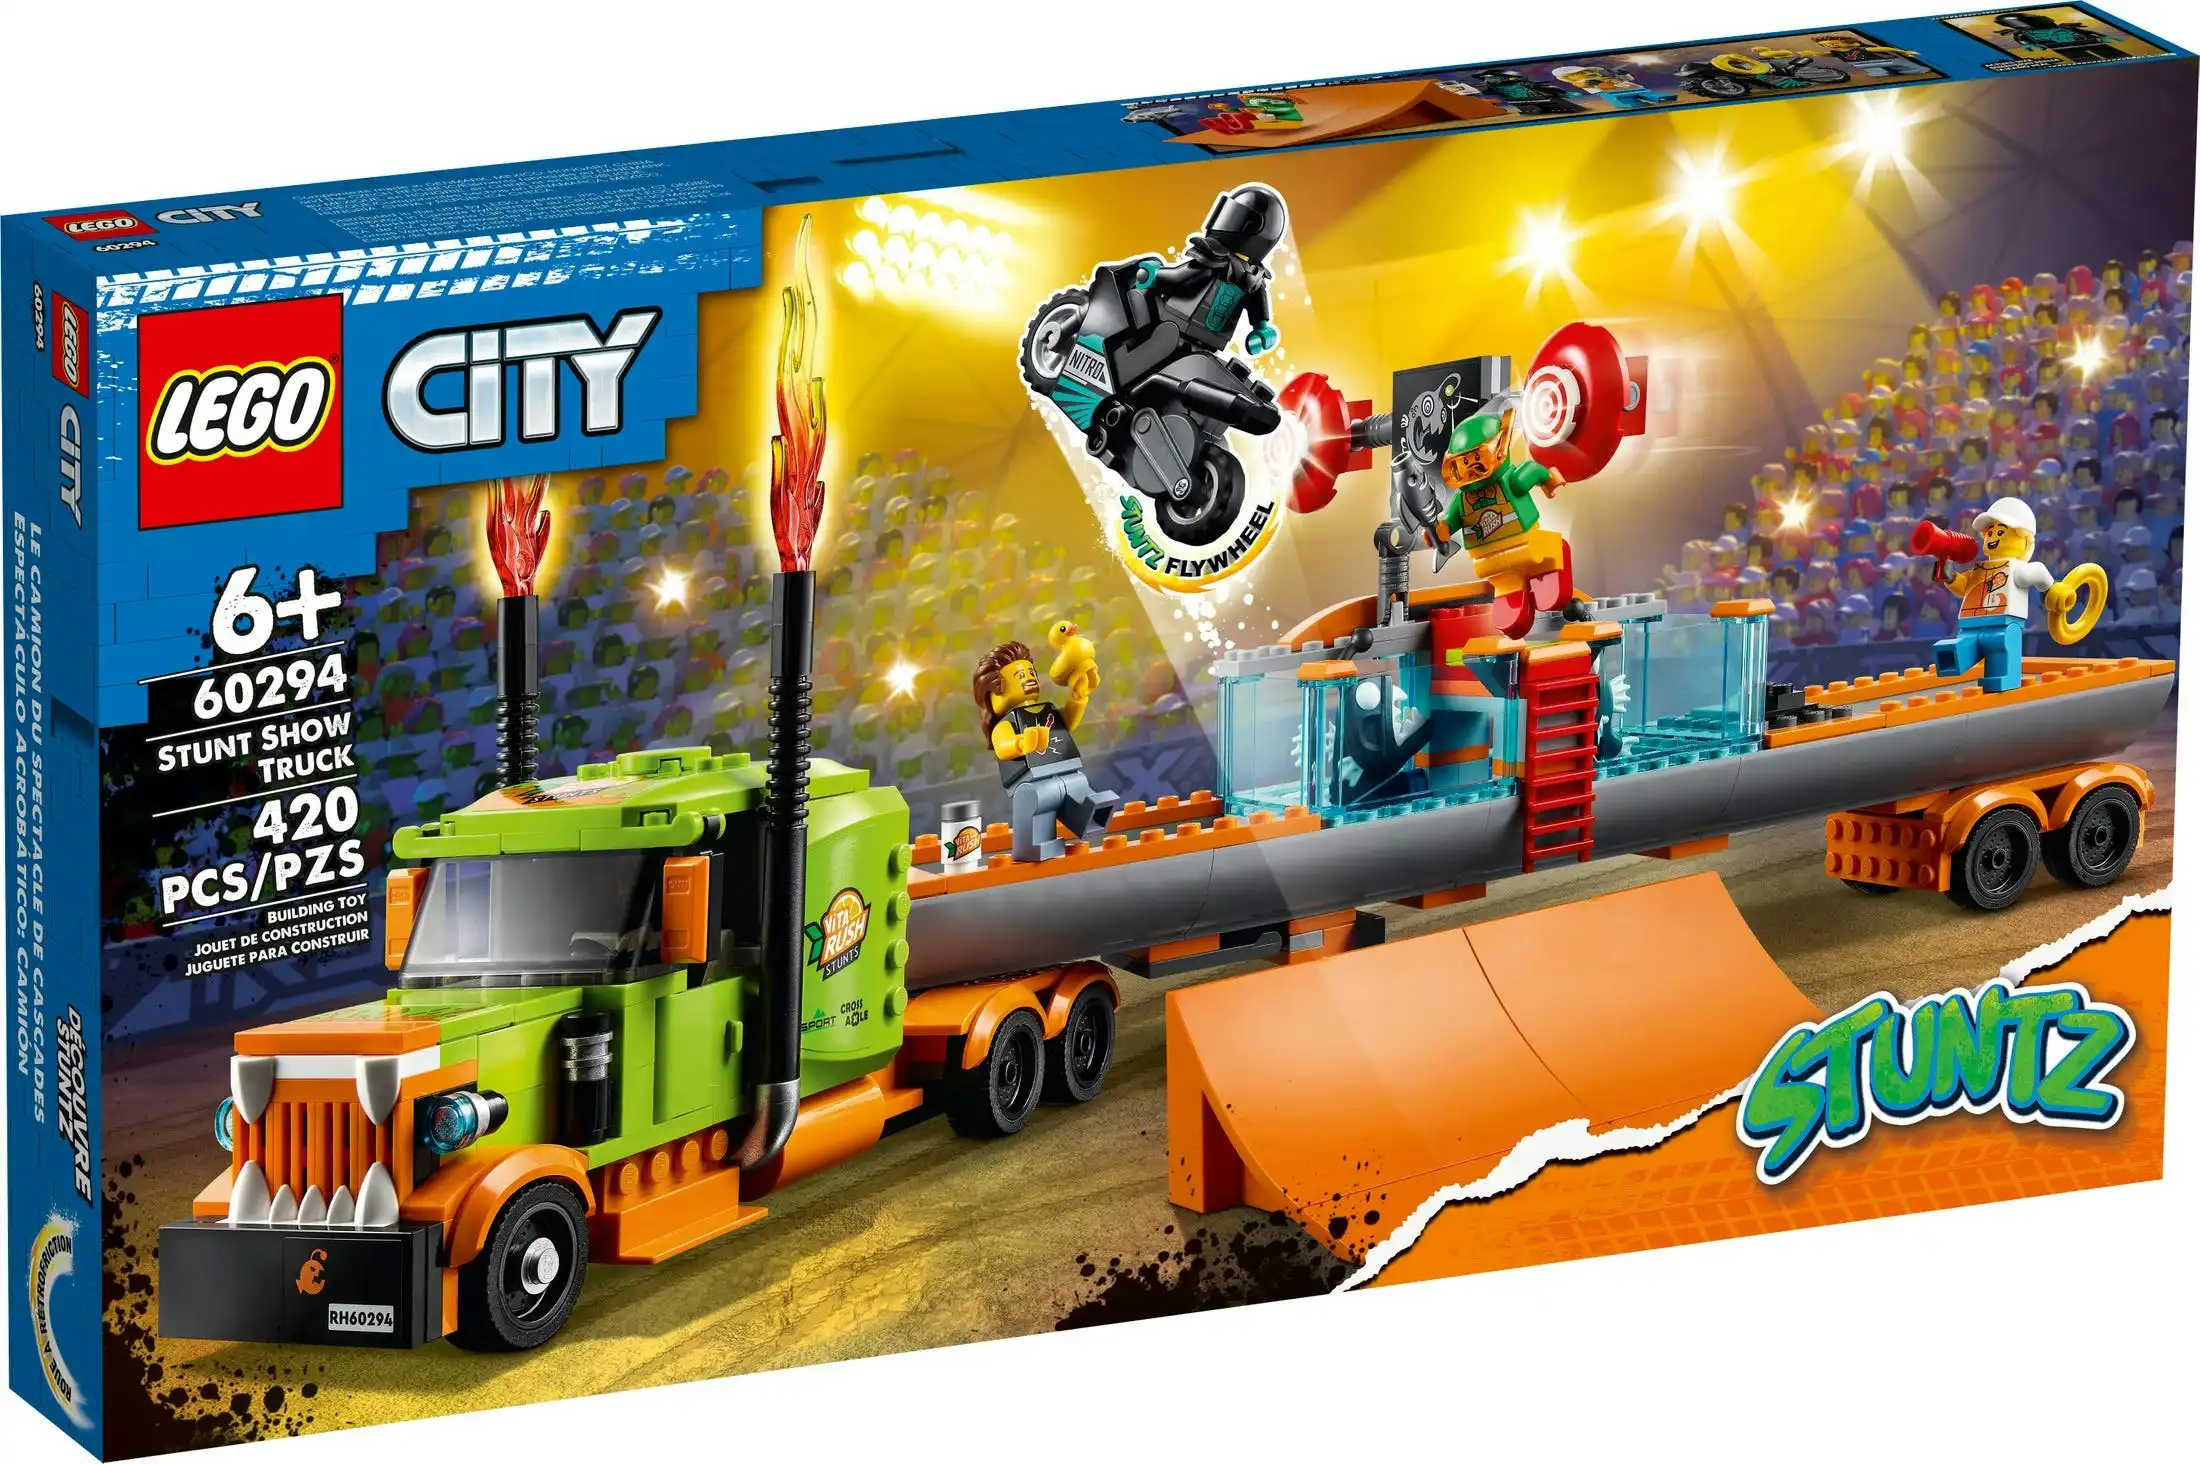 LEGO 60294 Stunt Show Truck - City Stuntz